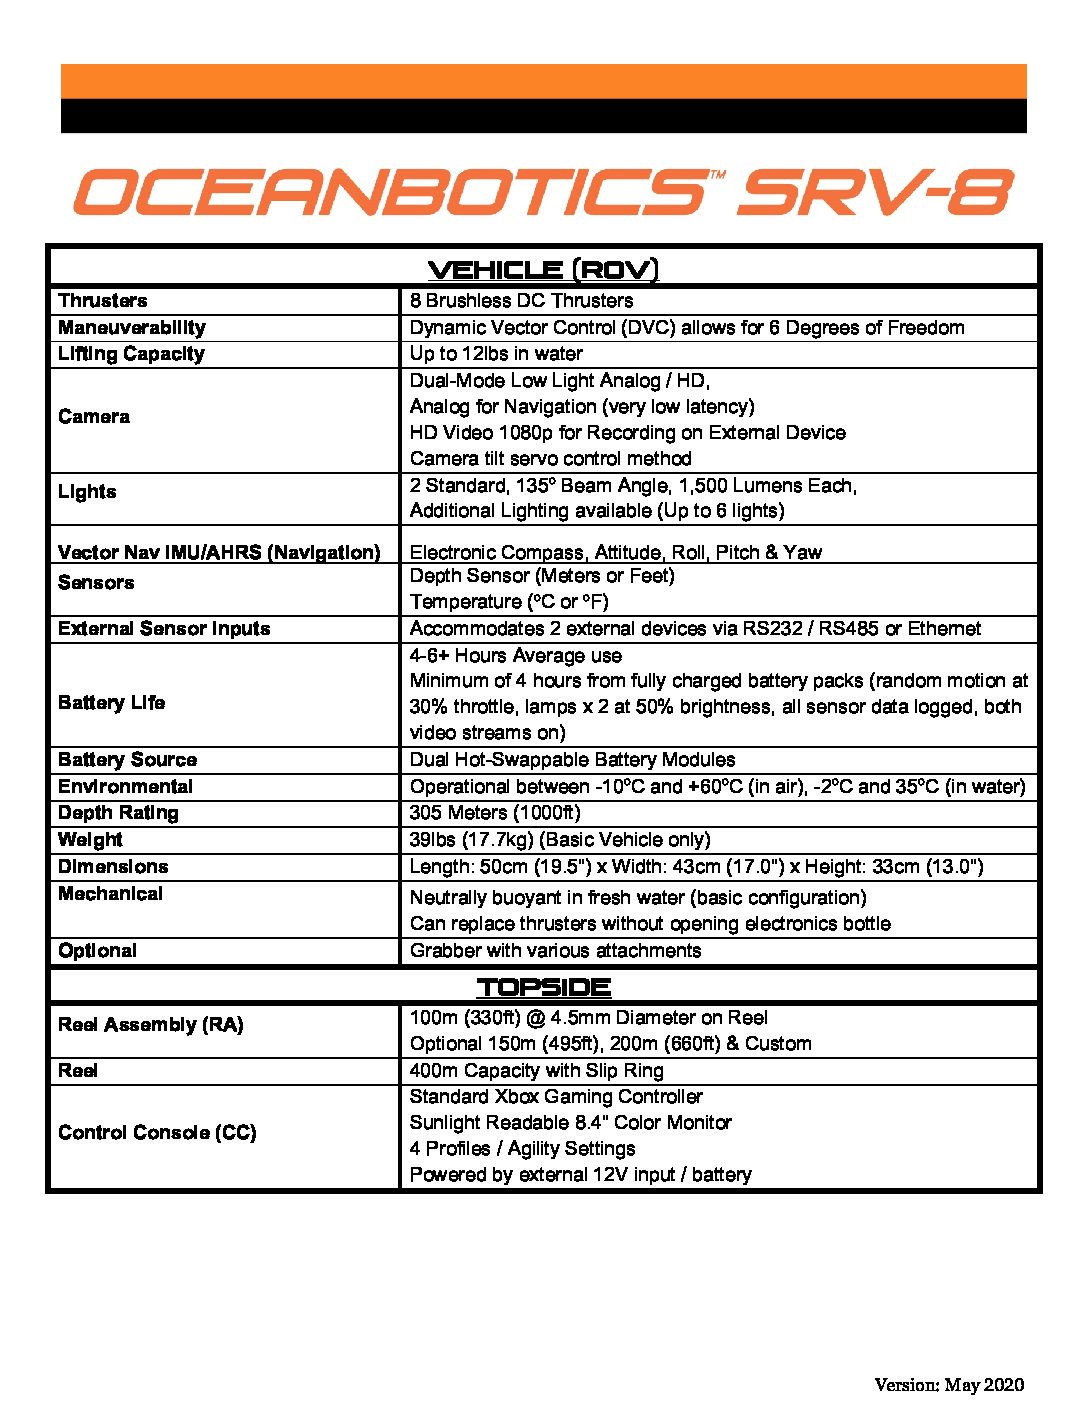 rje-oceanbotics-srv-8-specs.jpg